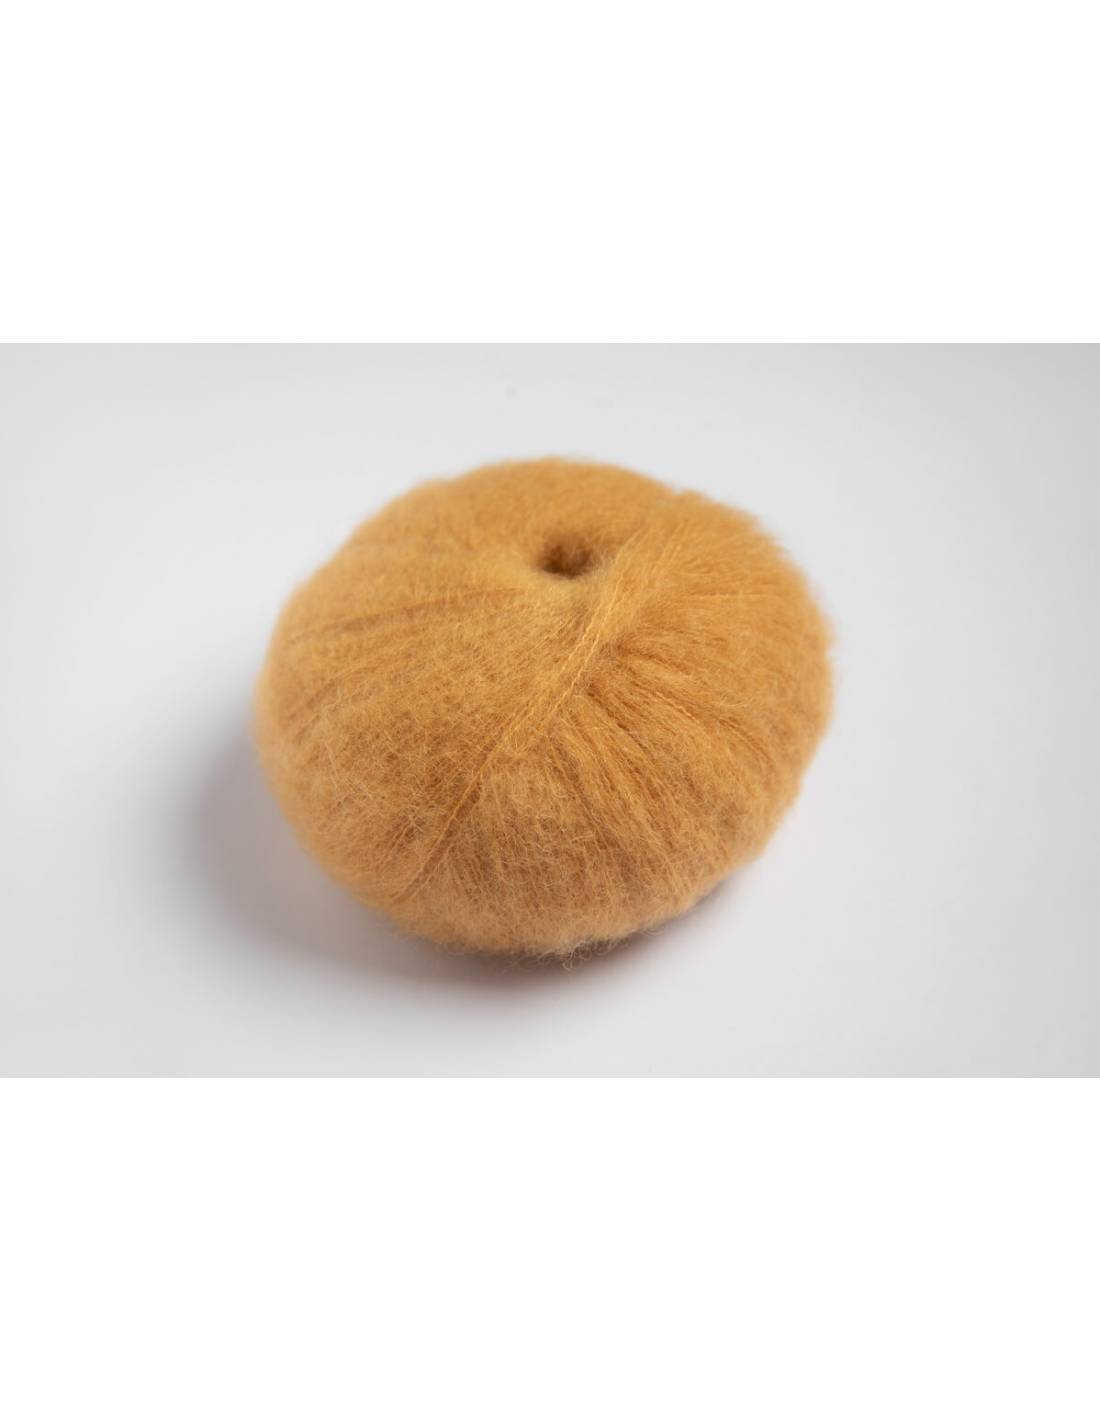 Rauma Plum (Mohair) Yarn – The Woolly Thistle